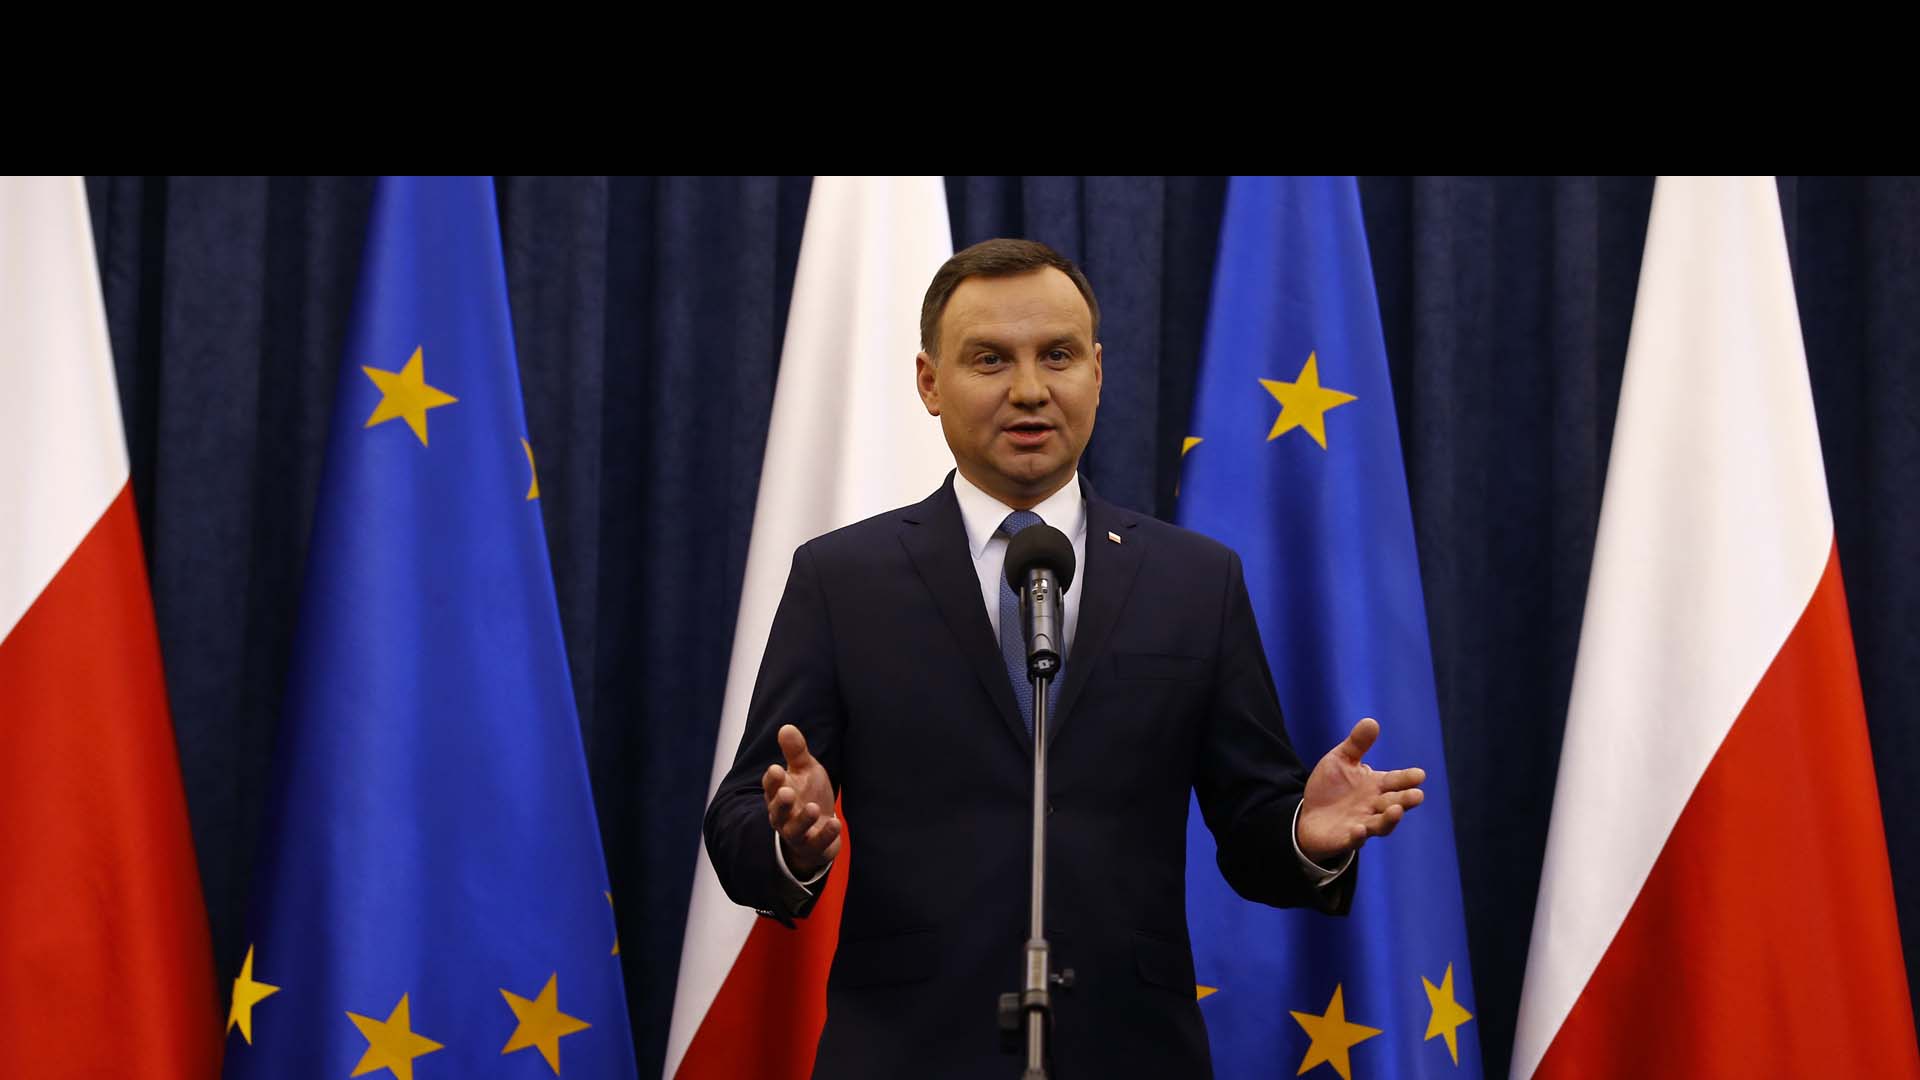 Polonia podría perder su derecho al voto si se considera que vela únicamente por prioridades políticas